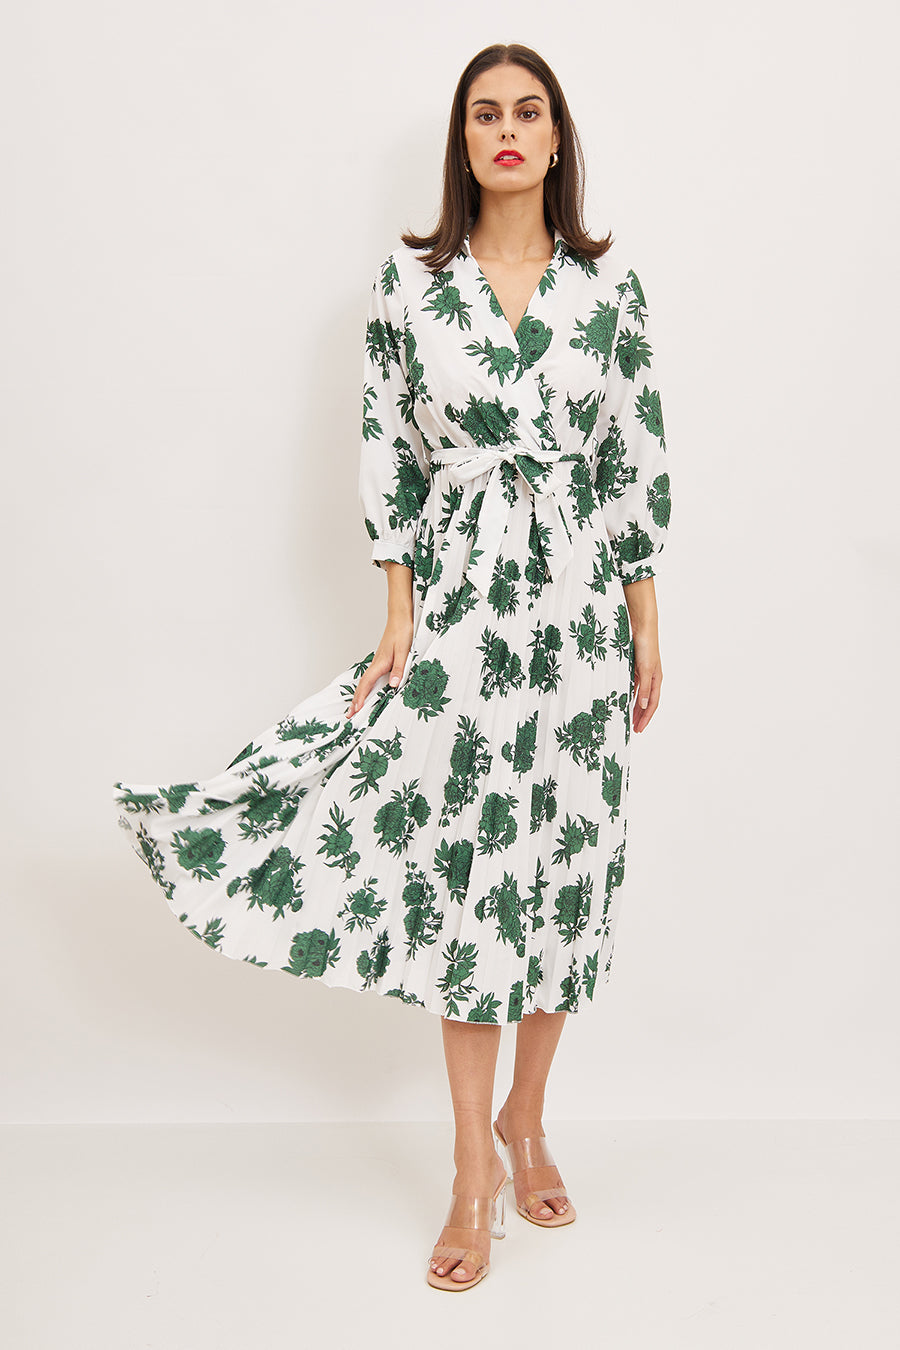 Γυναικείο φόρεμα Saphira, Πράσινο 1